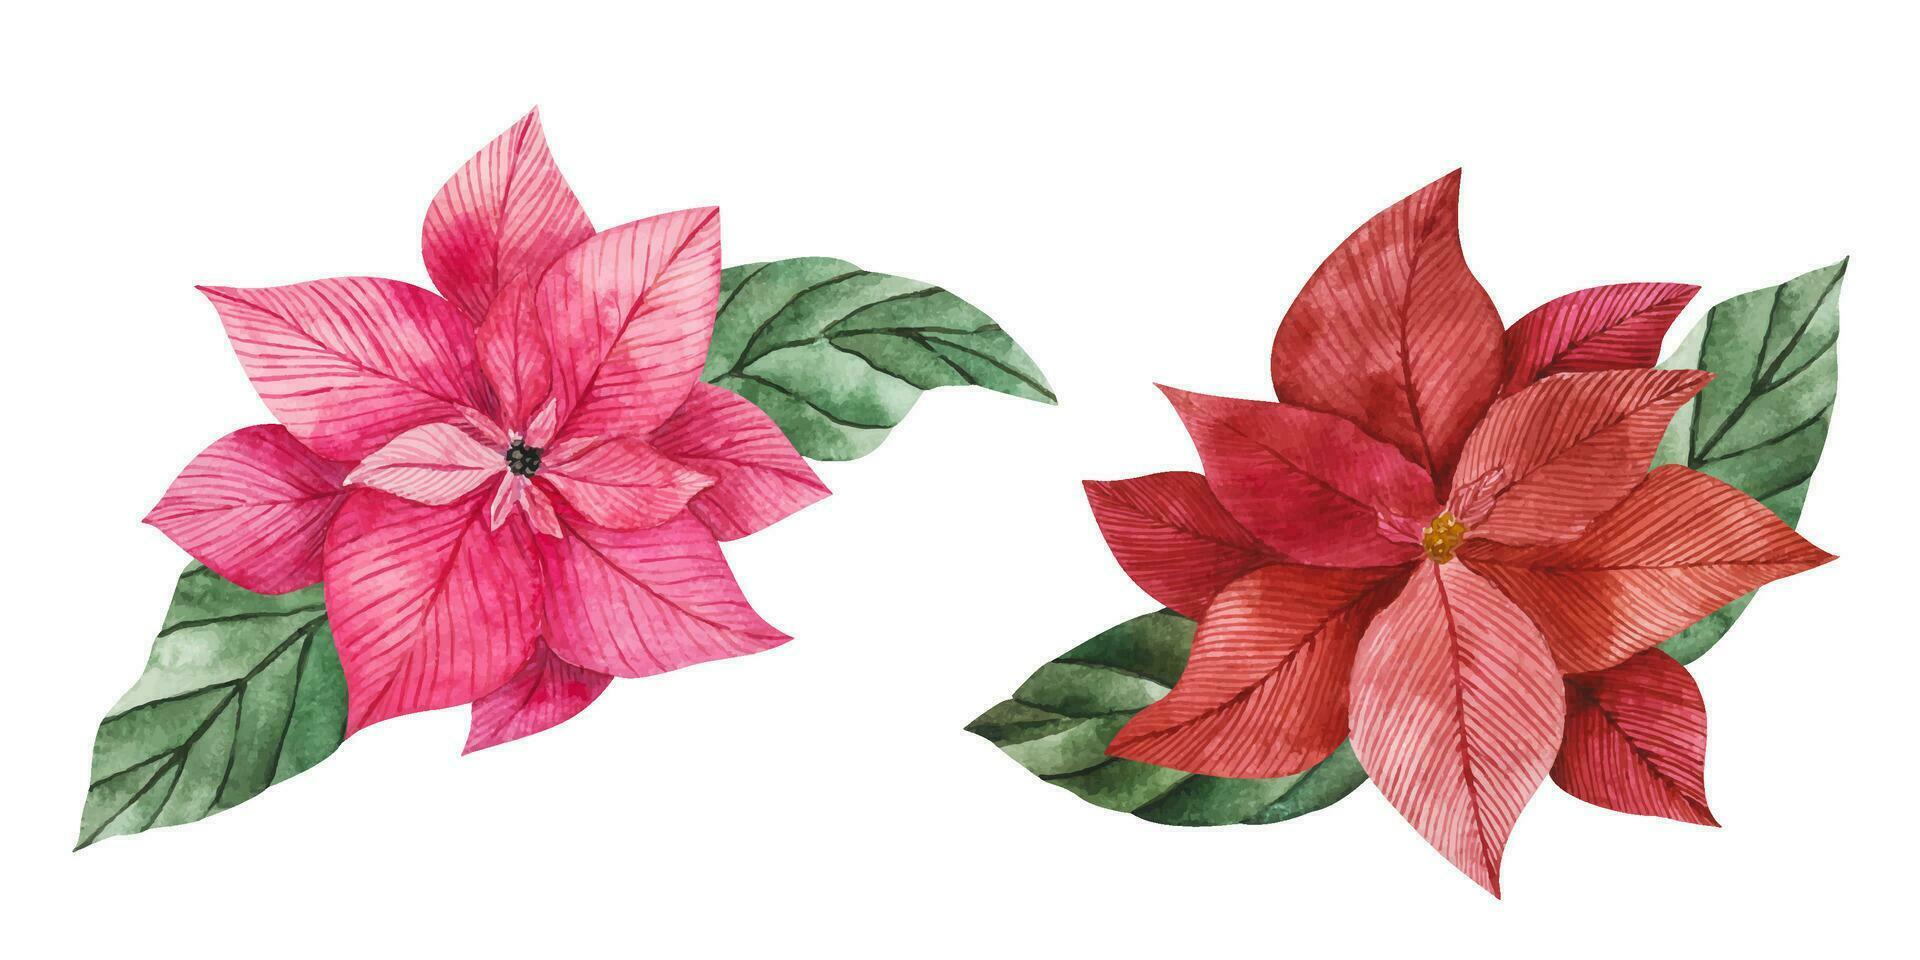 Vektor Aquarell Illustration von Weihnachtsstern Blumen im rot und Rosa mit Grün beschwingt Blätter. Clip Art zum Weihnachten Design, Drucke, Aufkleber, Verpackung, Textilien. festlich Blume zum Kompositionen